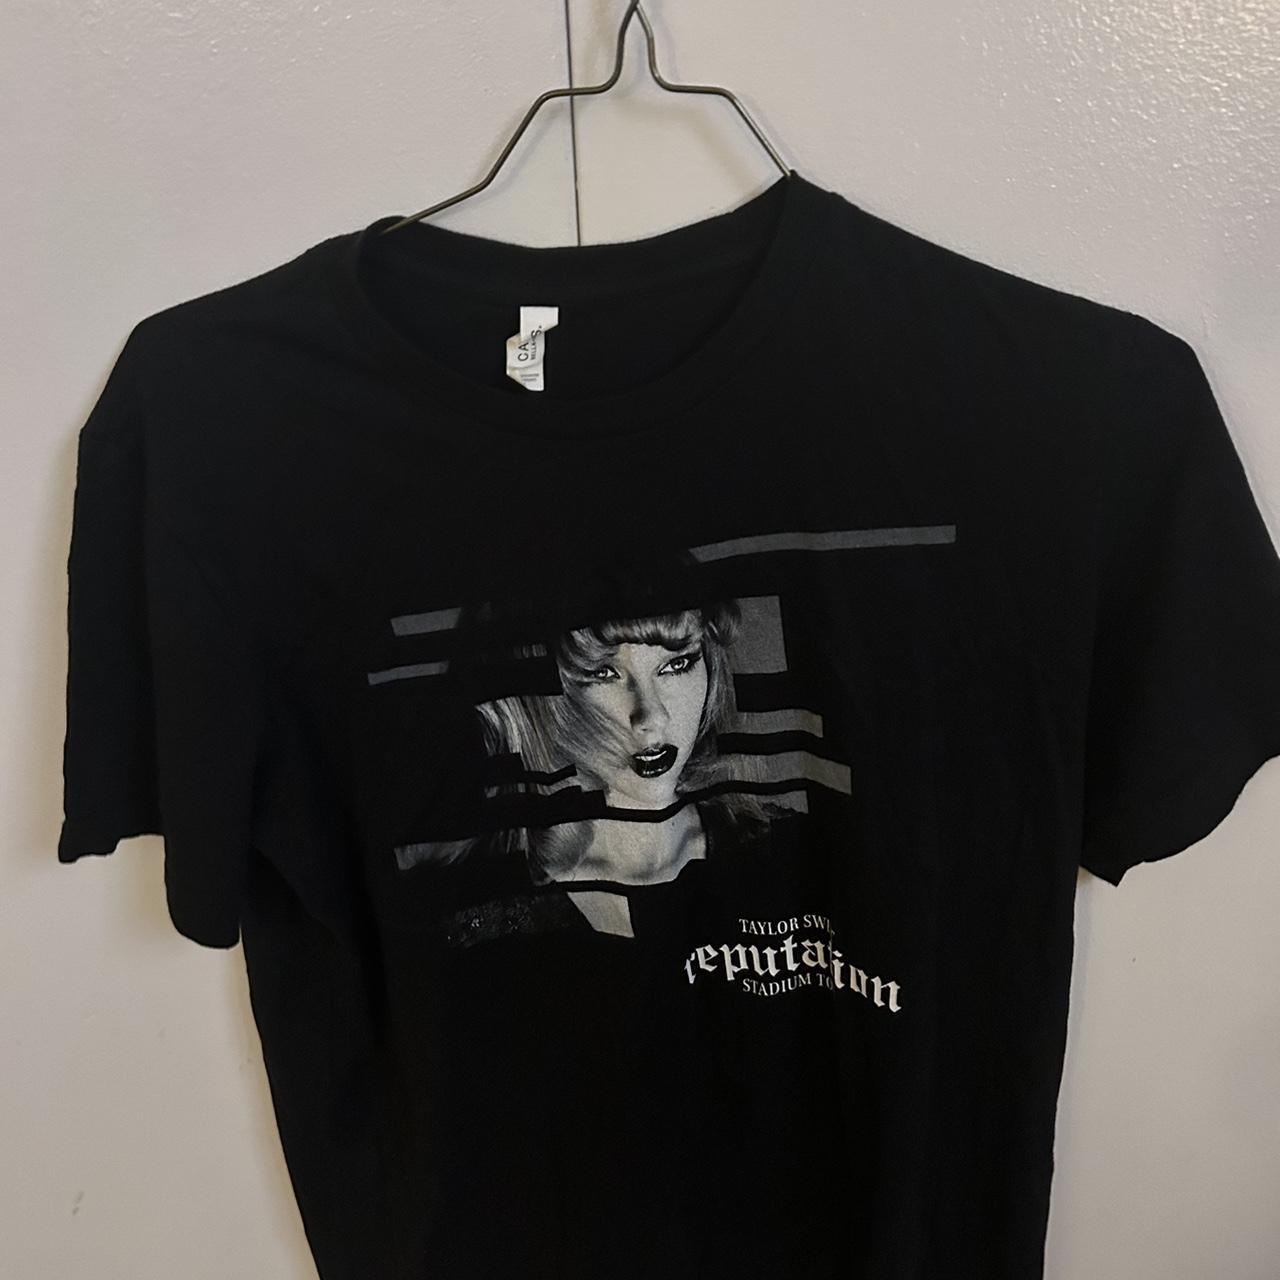 Taylor Swift Reputation Tour t shirt - Depop